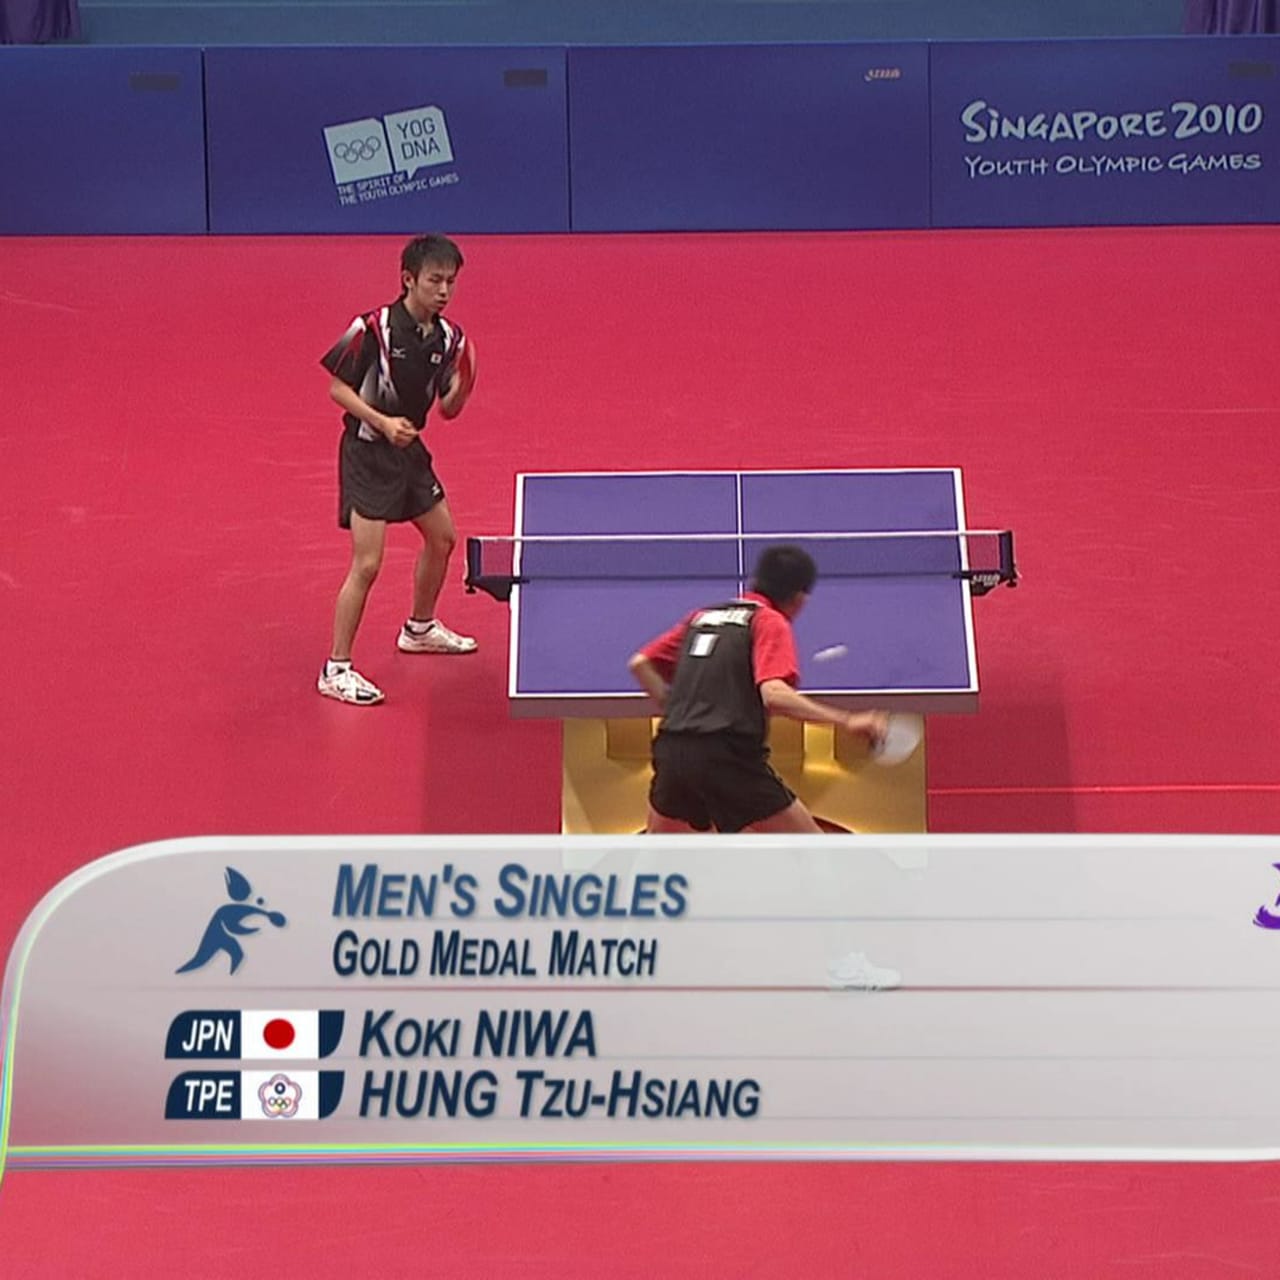 丹羽孝希(日本)v黄子强(中华台北) - 男子乒乓球 | 2010年新加坡青奥会